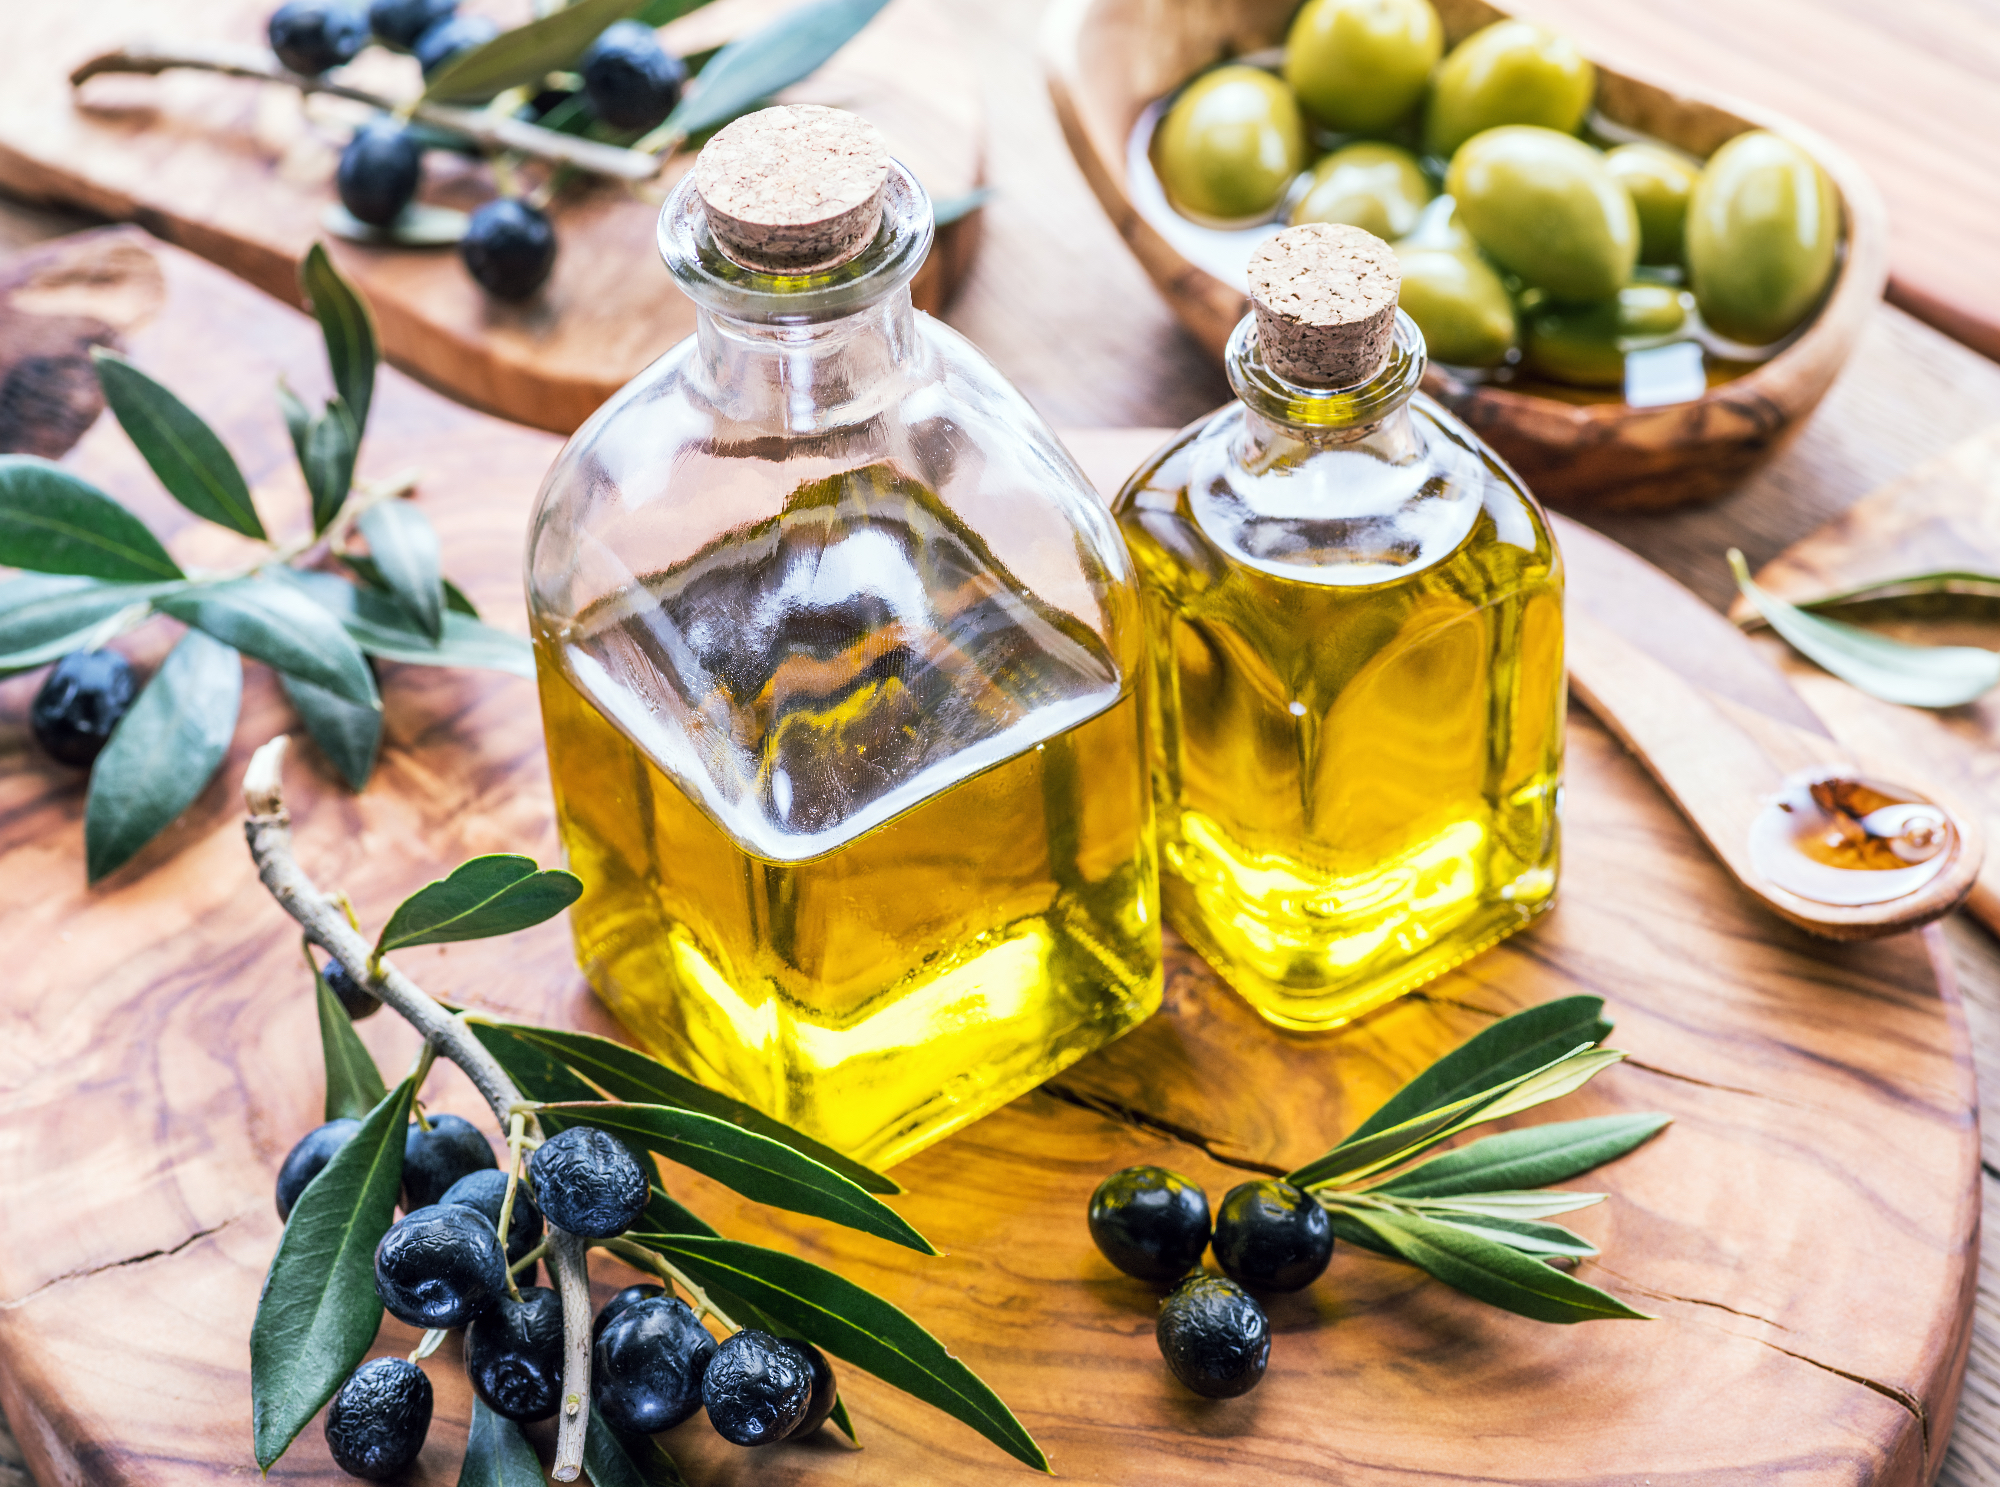 Domače olivno olje nas je z svojim okusom fasciniralo